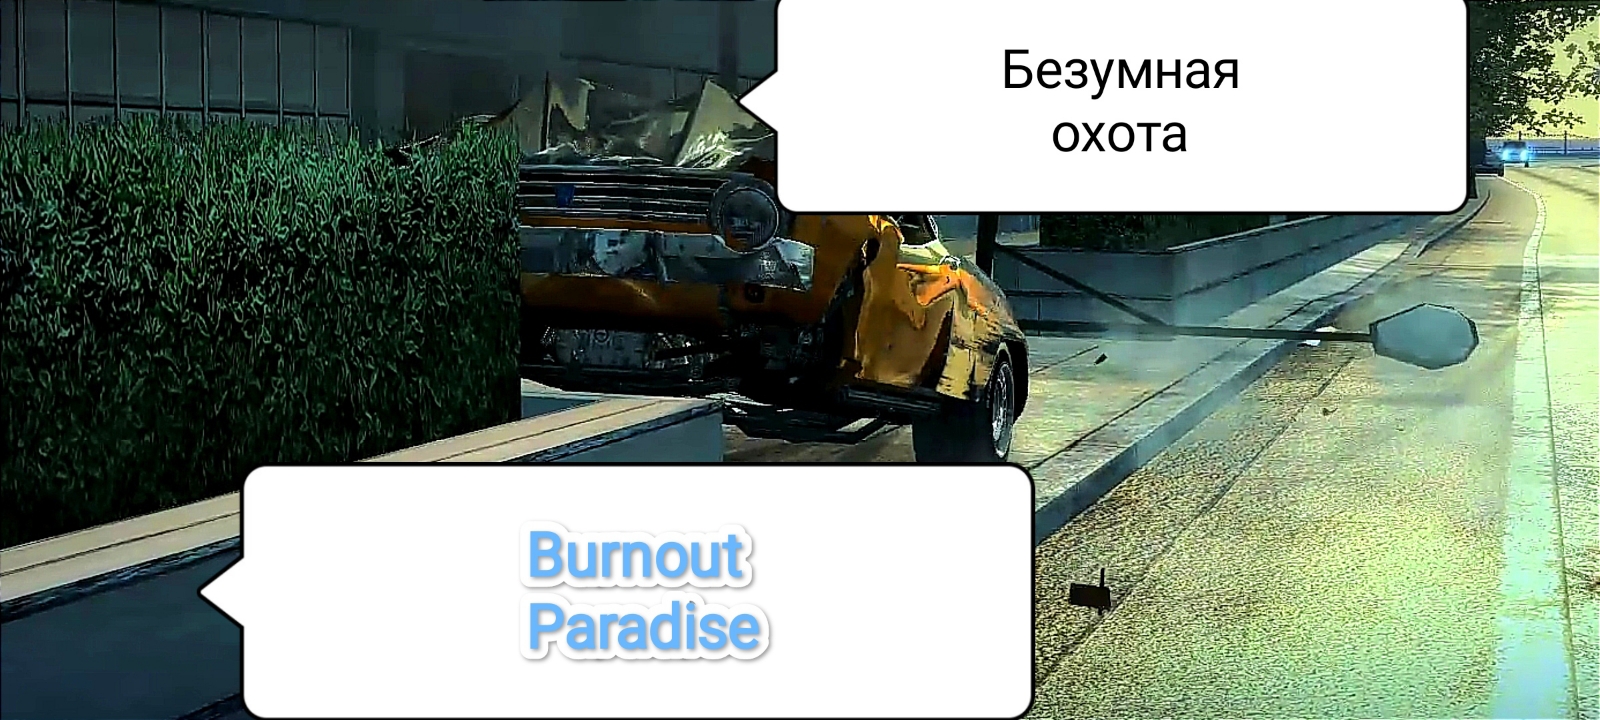 Burnout Paradise v. 1.1.0.0 - Безумная охота